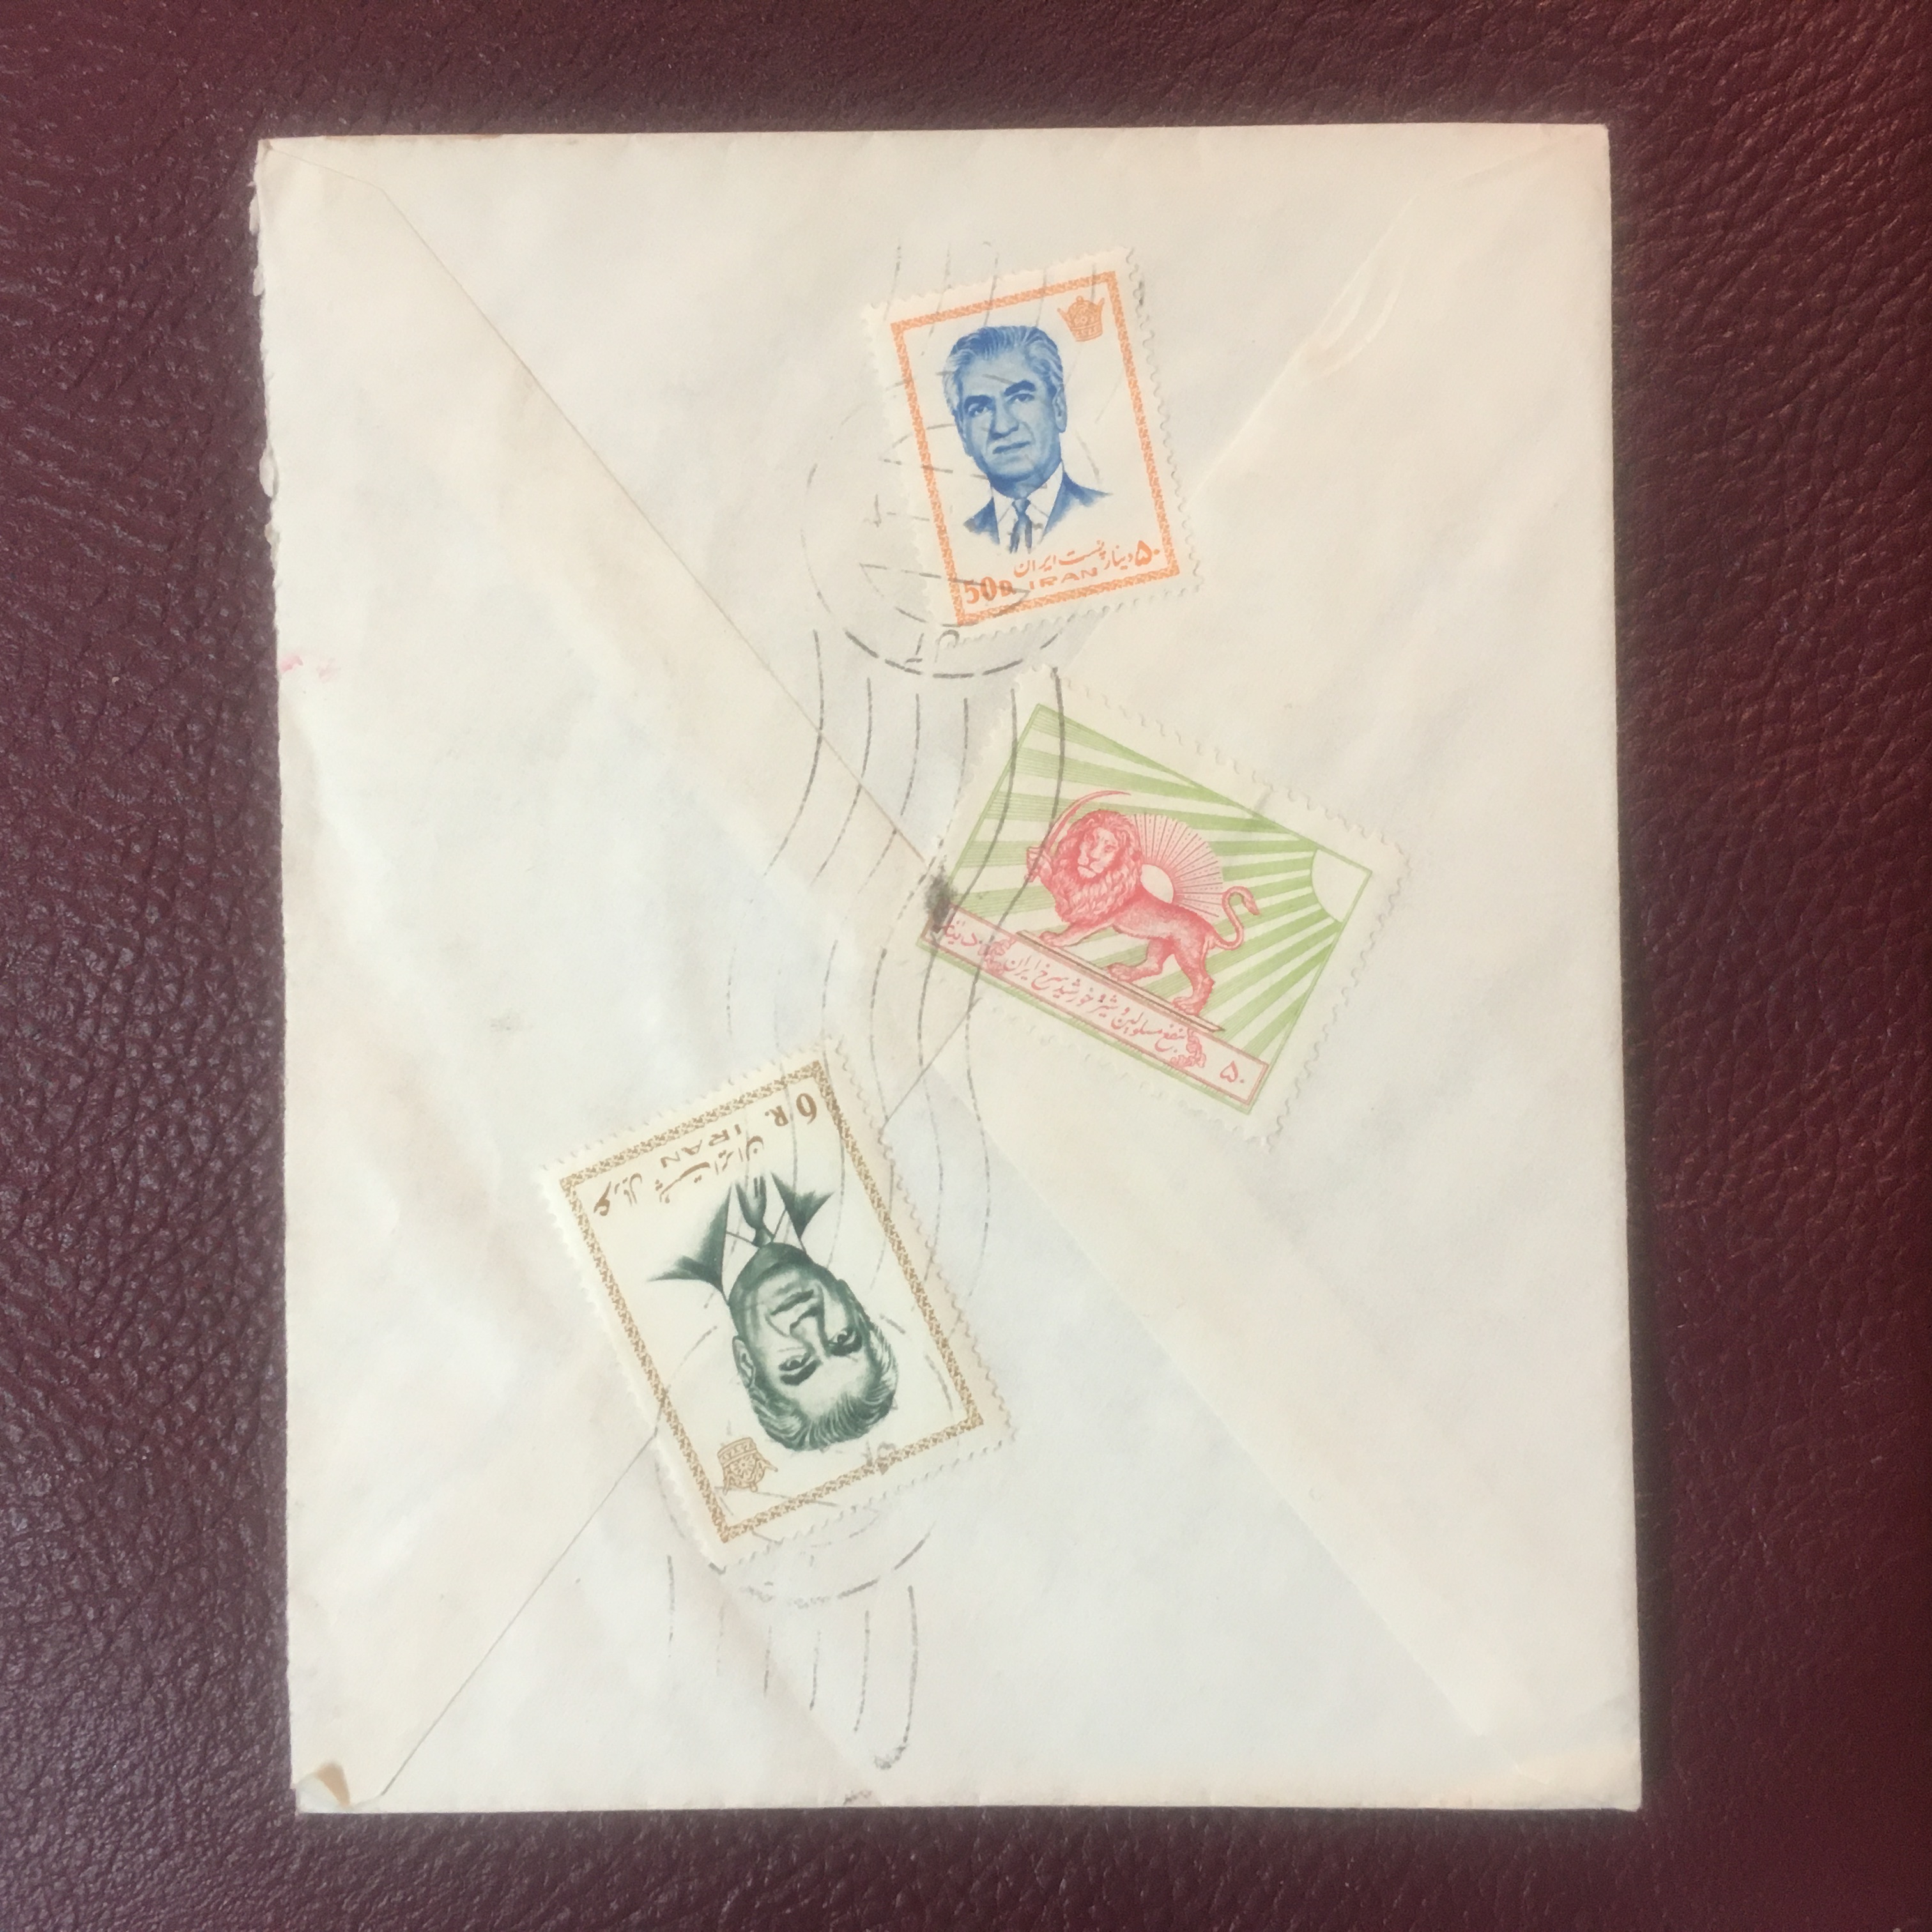 پاکت پستی دوره پهلوی به سه قطعه تمبر ارزشمند